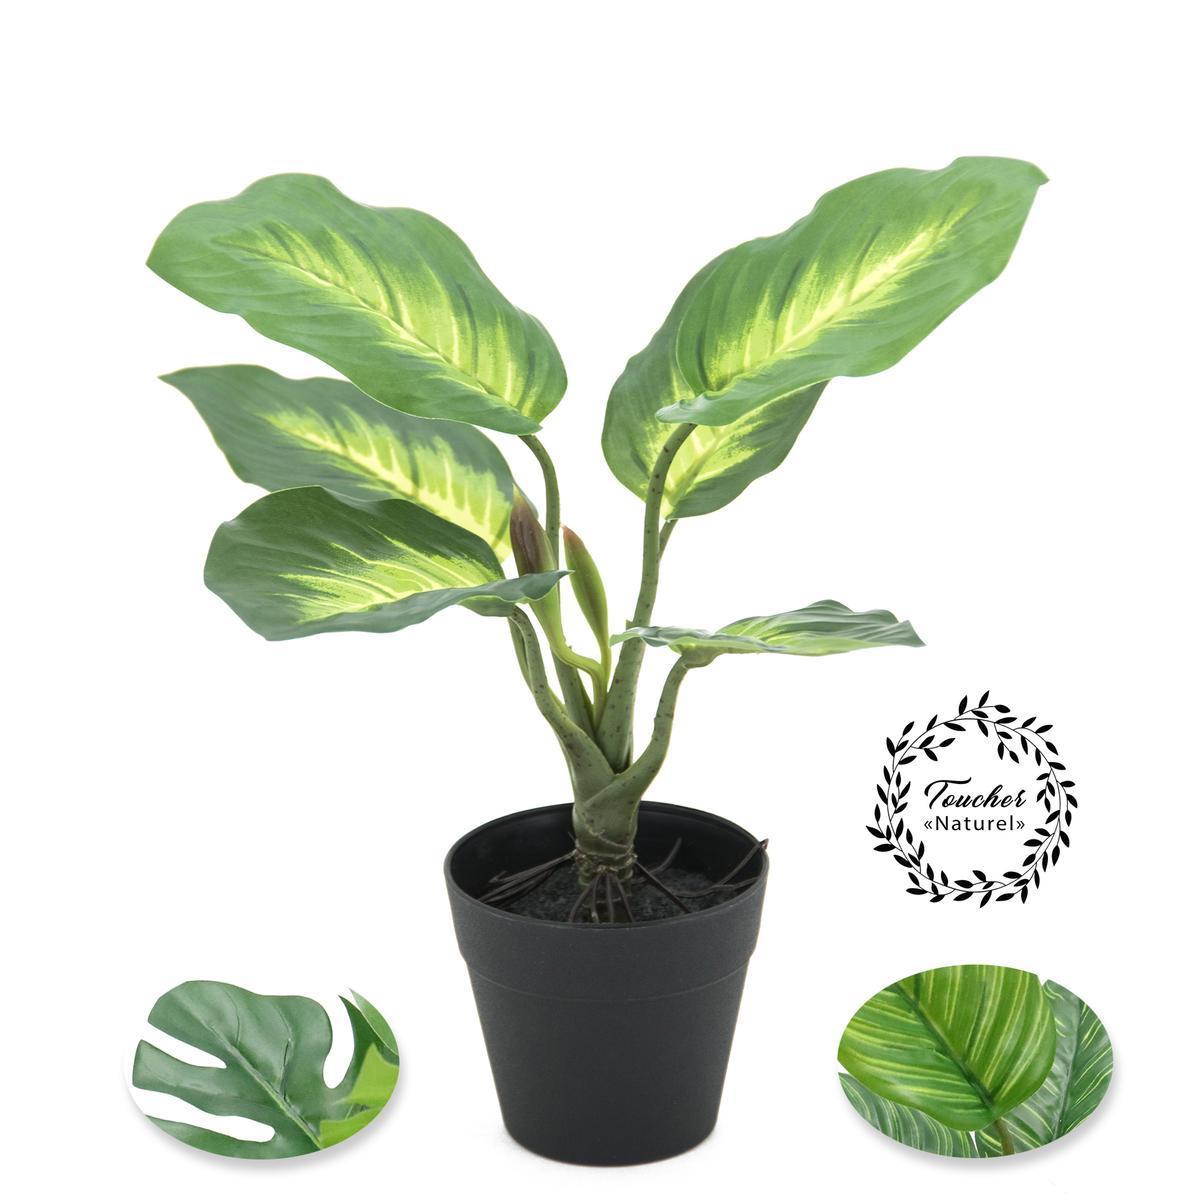 Plante verte toucher naturel - H 25 cm - Vert